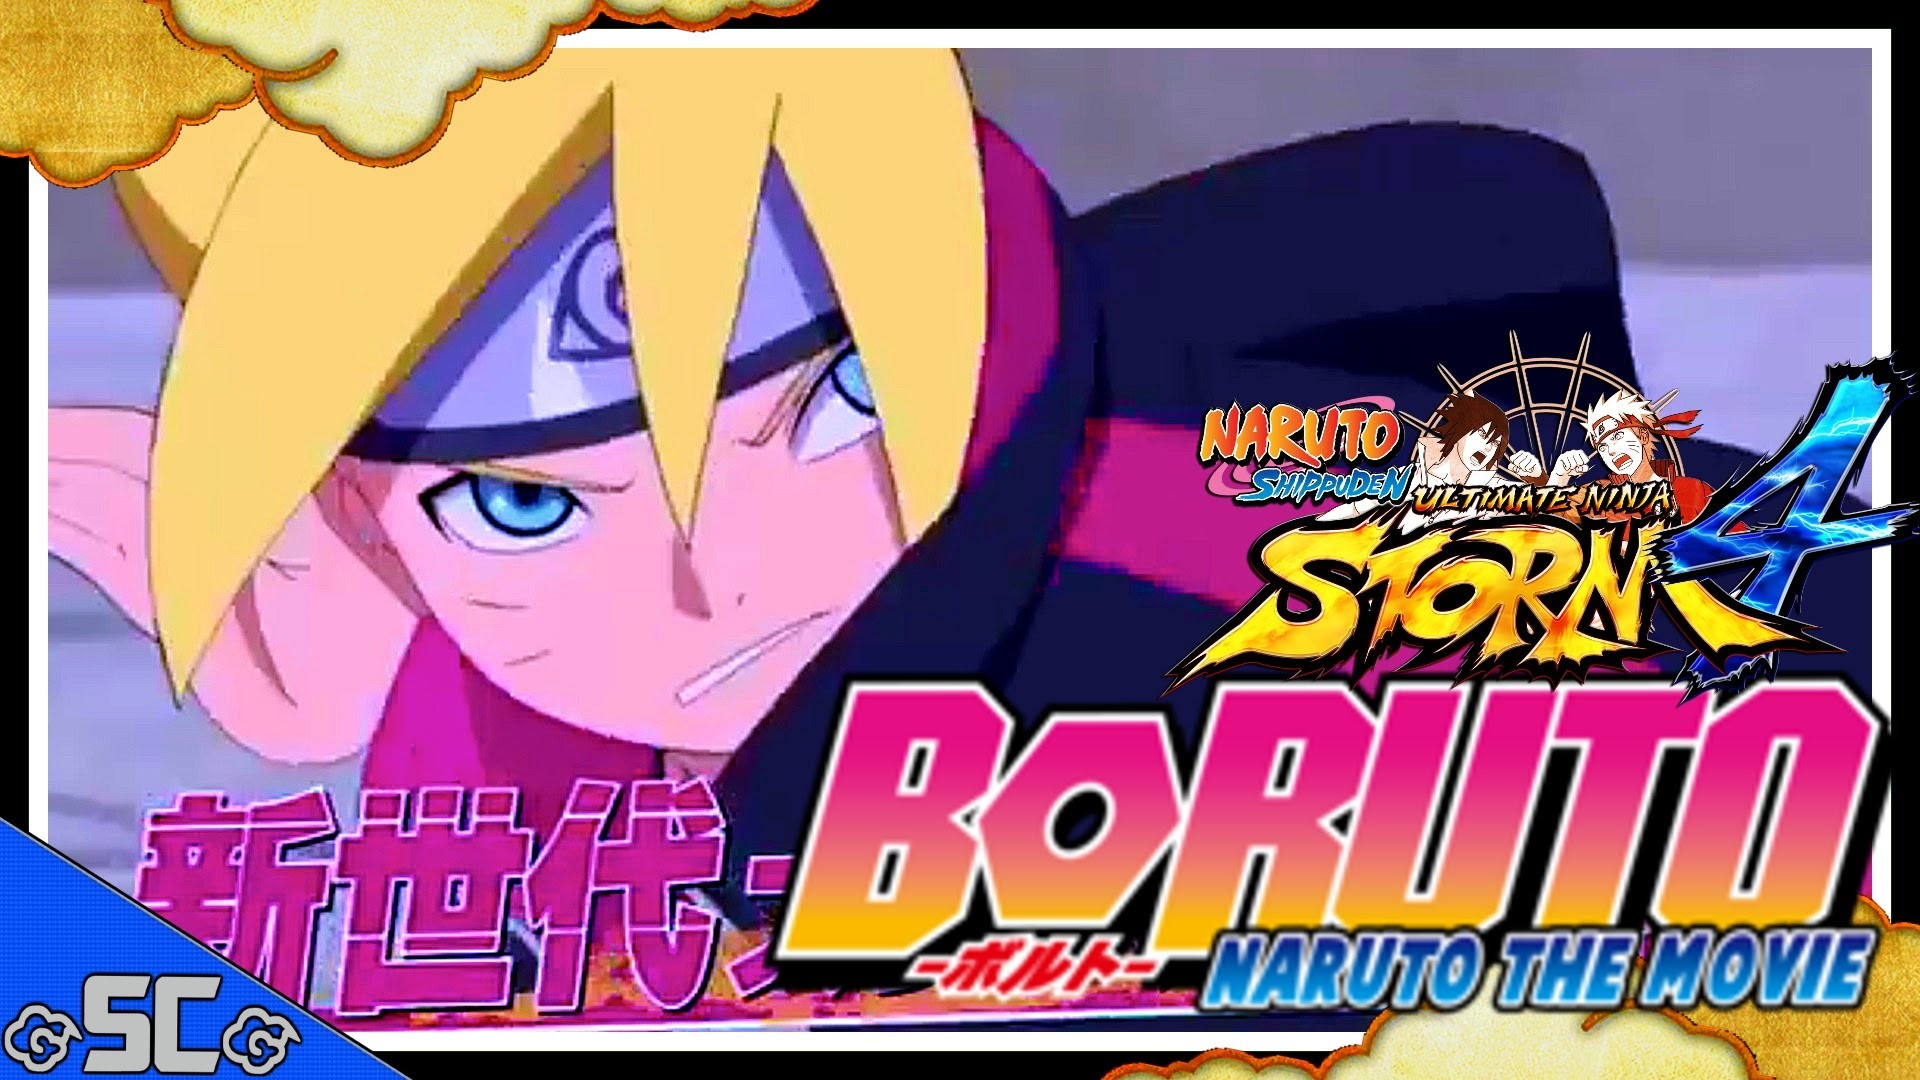 1920x1080 âBoruto: Naruto The Movie Teaser Trailer 4 (Reaction) Boruto's Gentle Fist!  BYAKUGAN? STORM 4 PLZ!â - YouTube